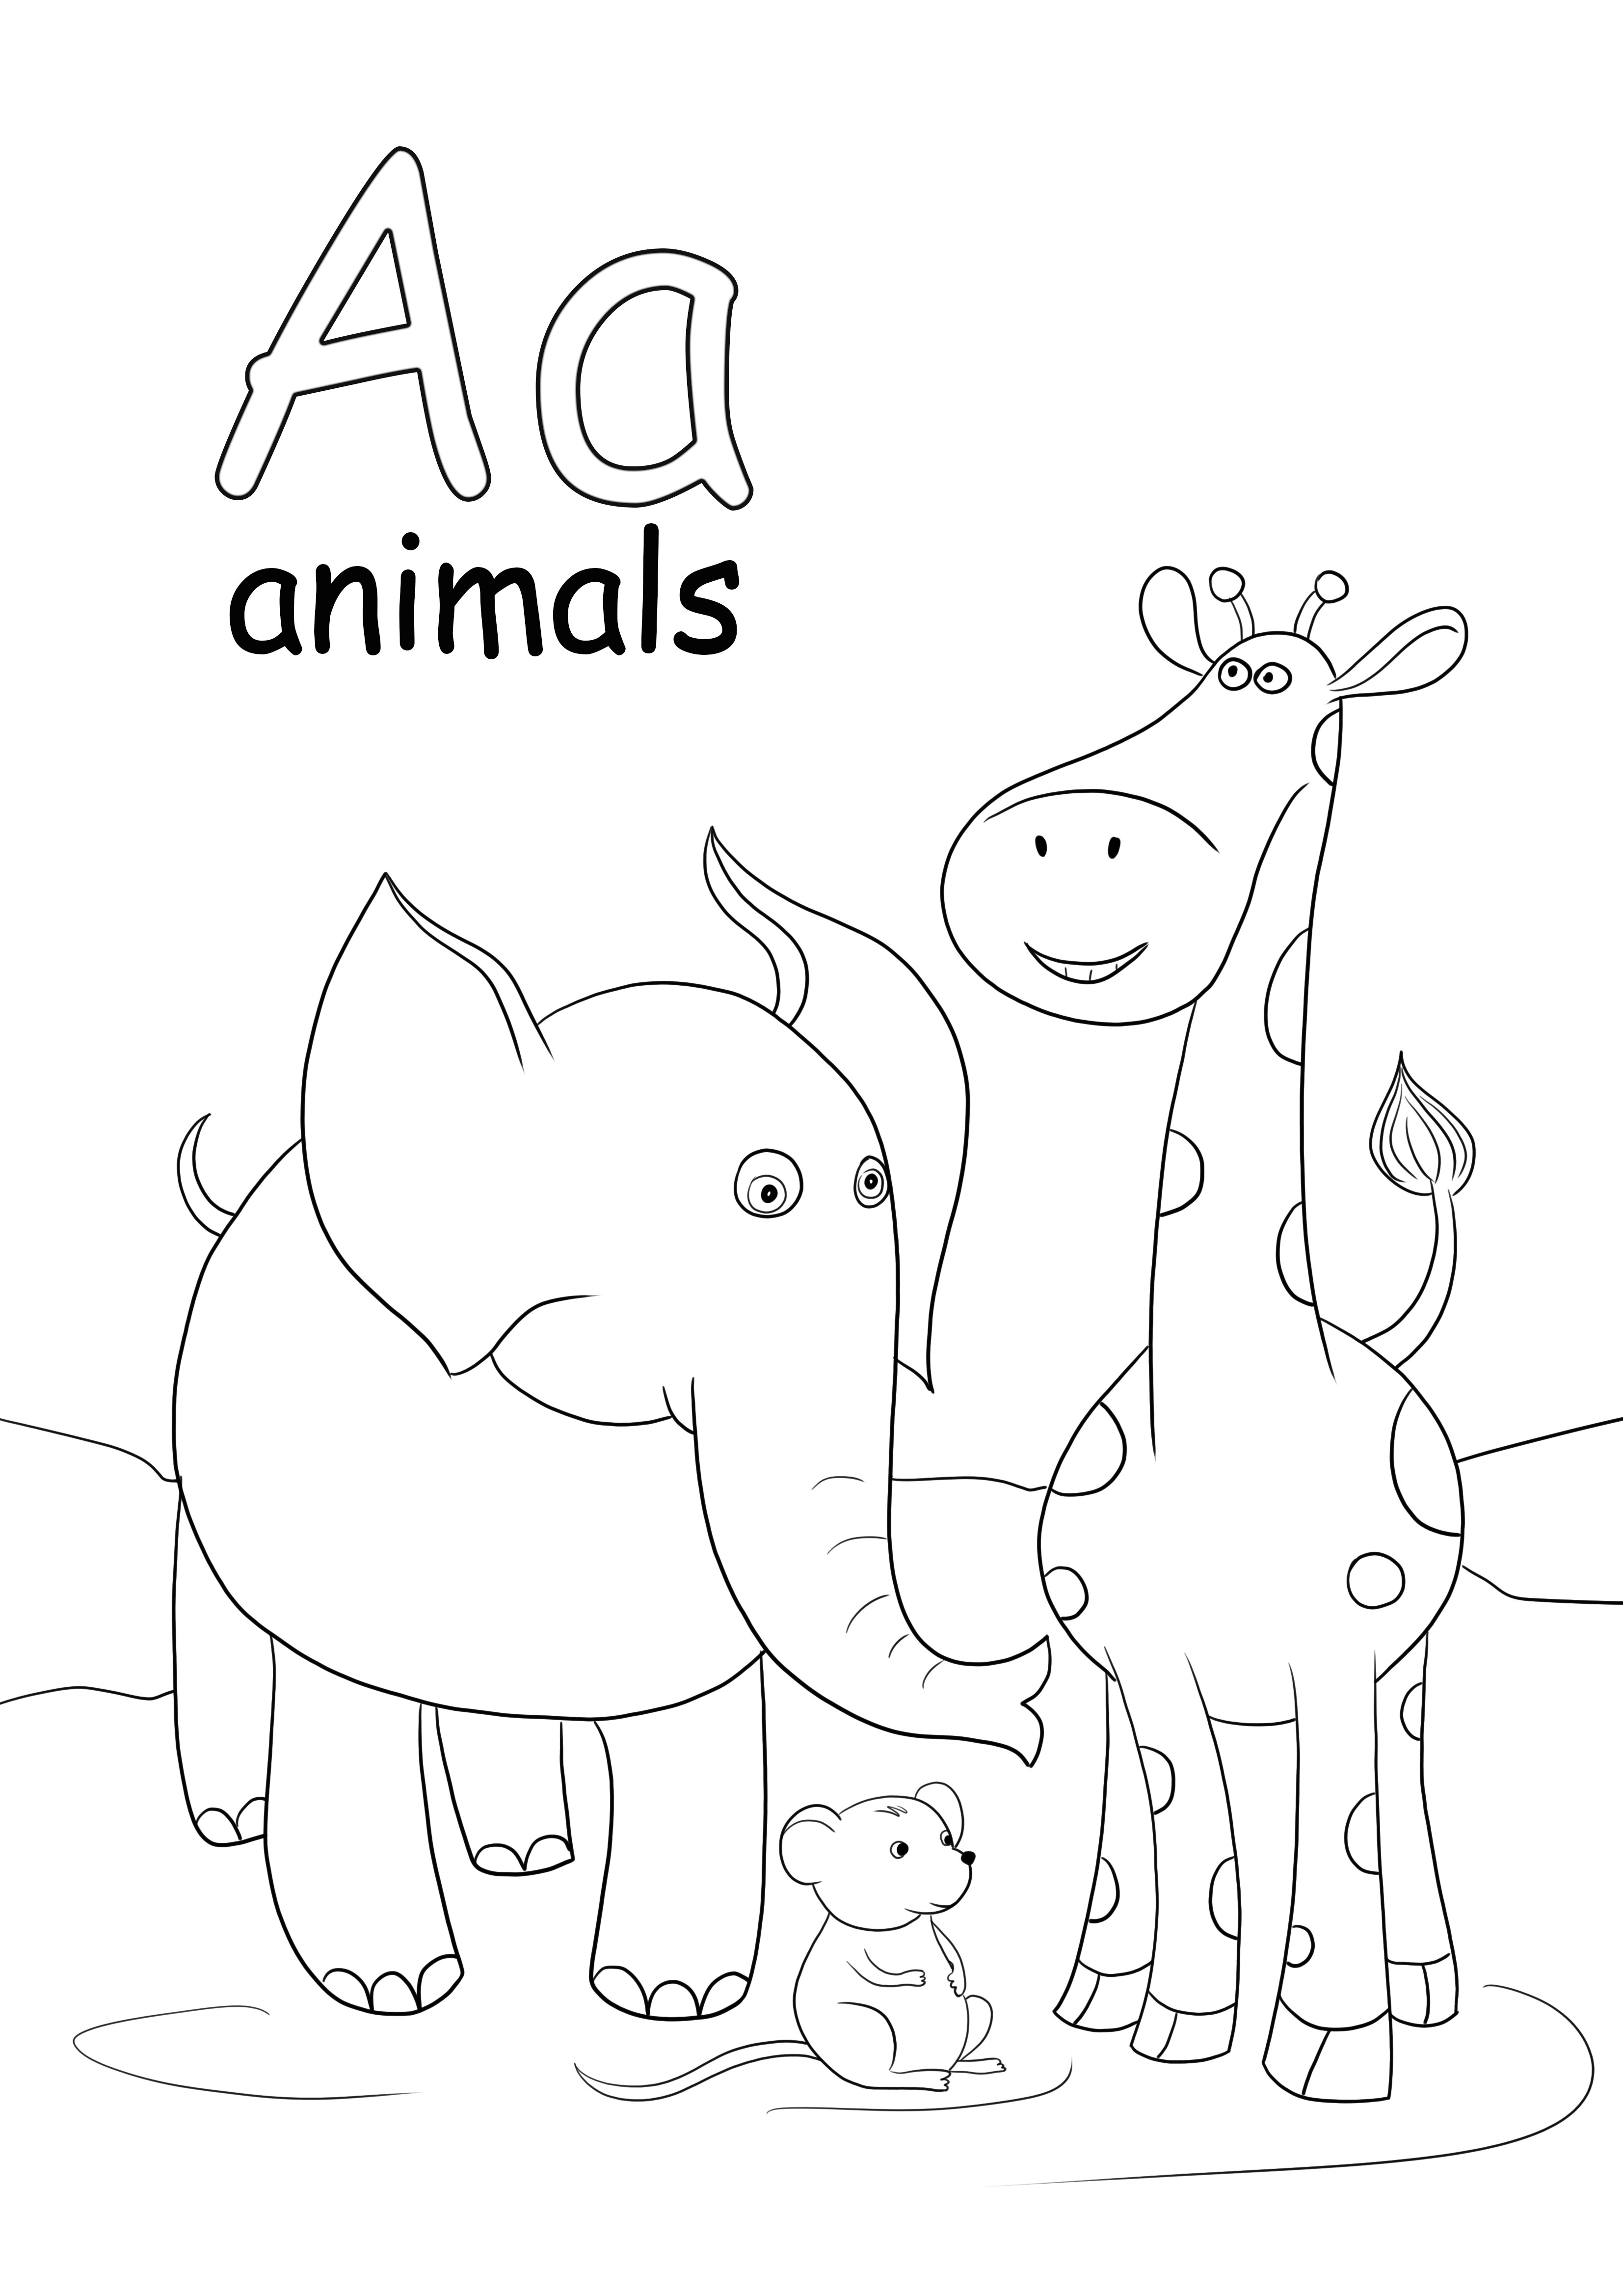 A harfi hayvanlar boyama ve ücretsiz baskı sayfası içindir